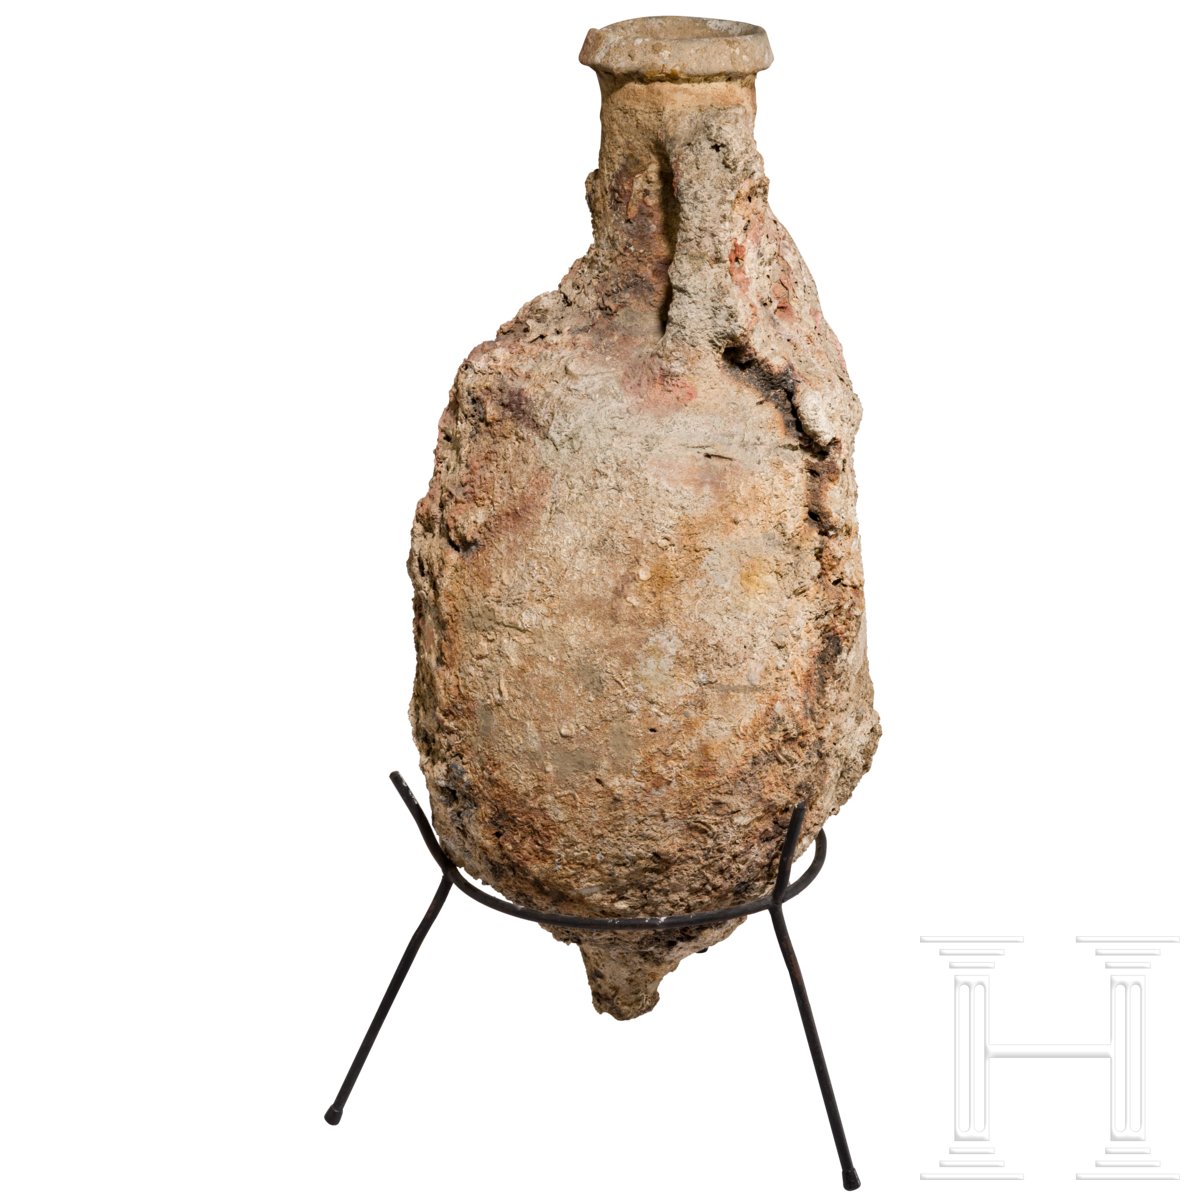 Bauchige Ölamphore, römisch, 1. Jhdt. Bauchiger Körper, mit Meeresinkrustationen überzogen. Intakt - Image 3 of 3